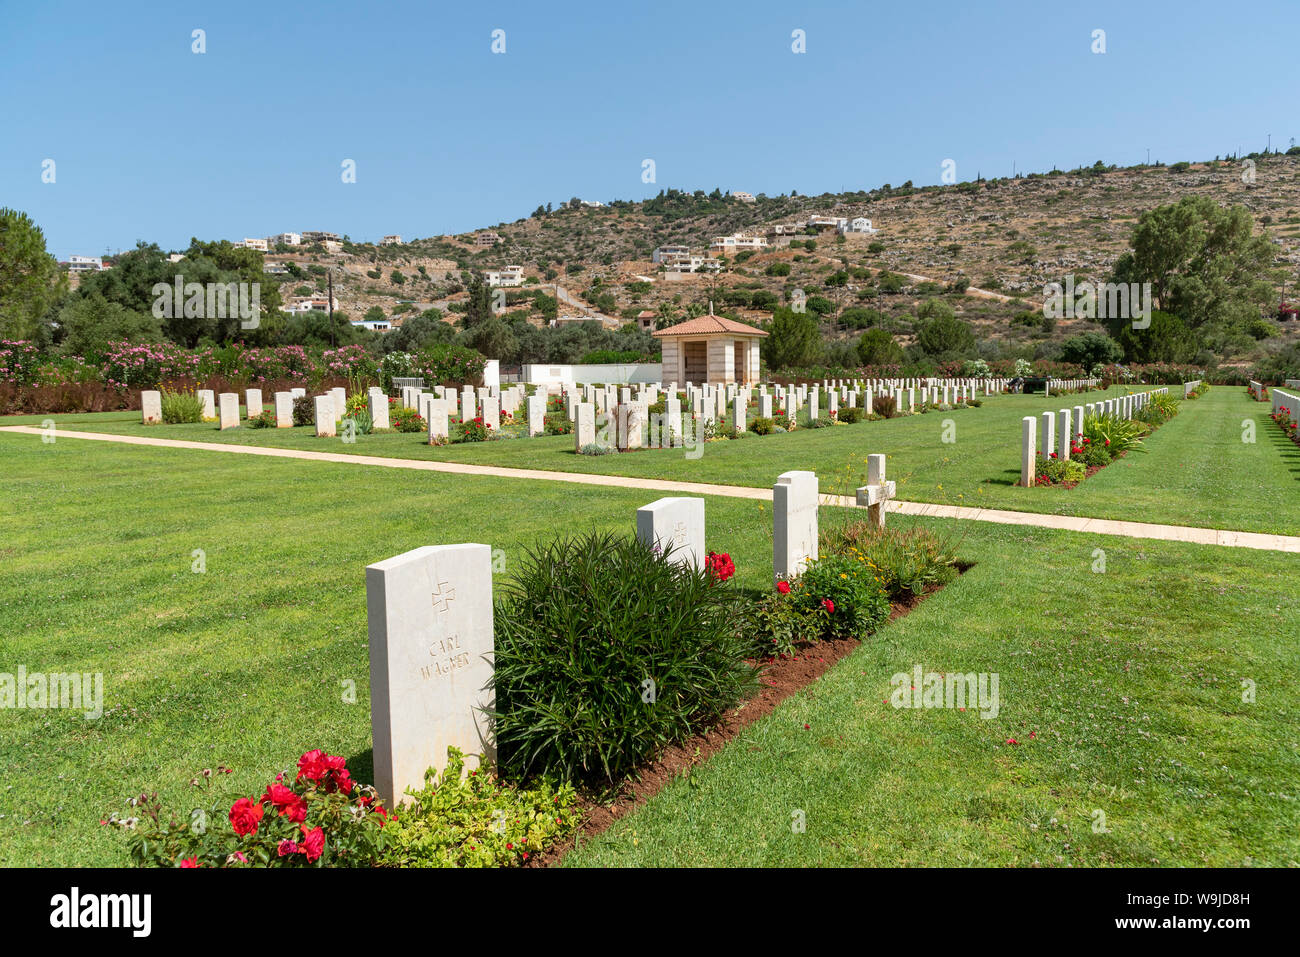 Suda Bucht War Cemetery, Kreta, Griechenland. Juni 2019. Steine des Gedenkens für die Zivilbevölkerung in dieser Region während der Jahre 1939 und 1942 starb. Stockfoto